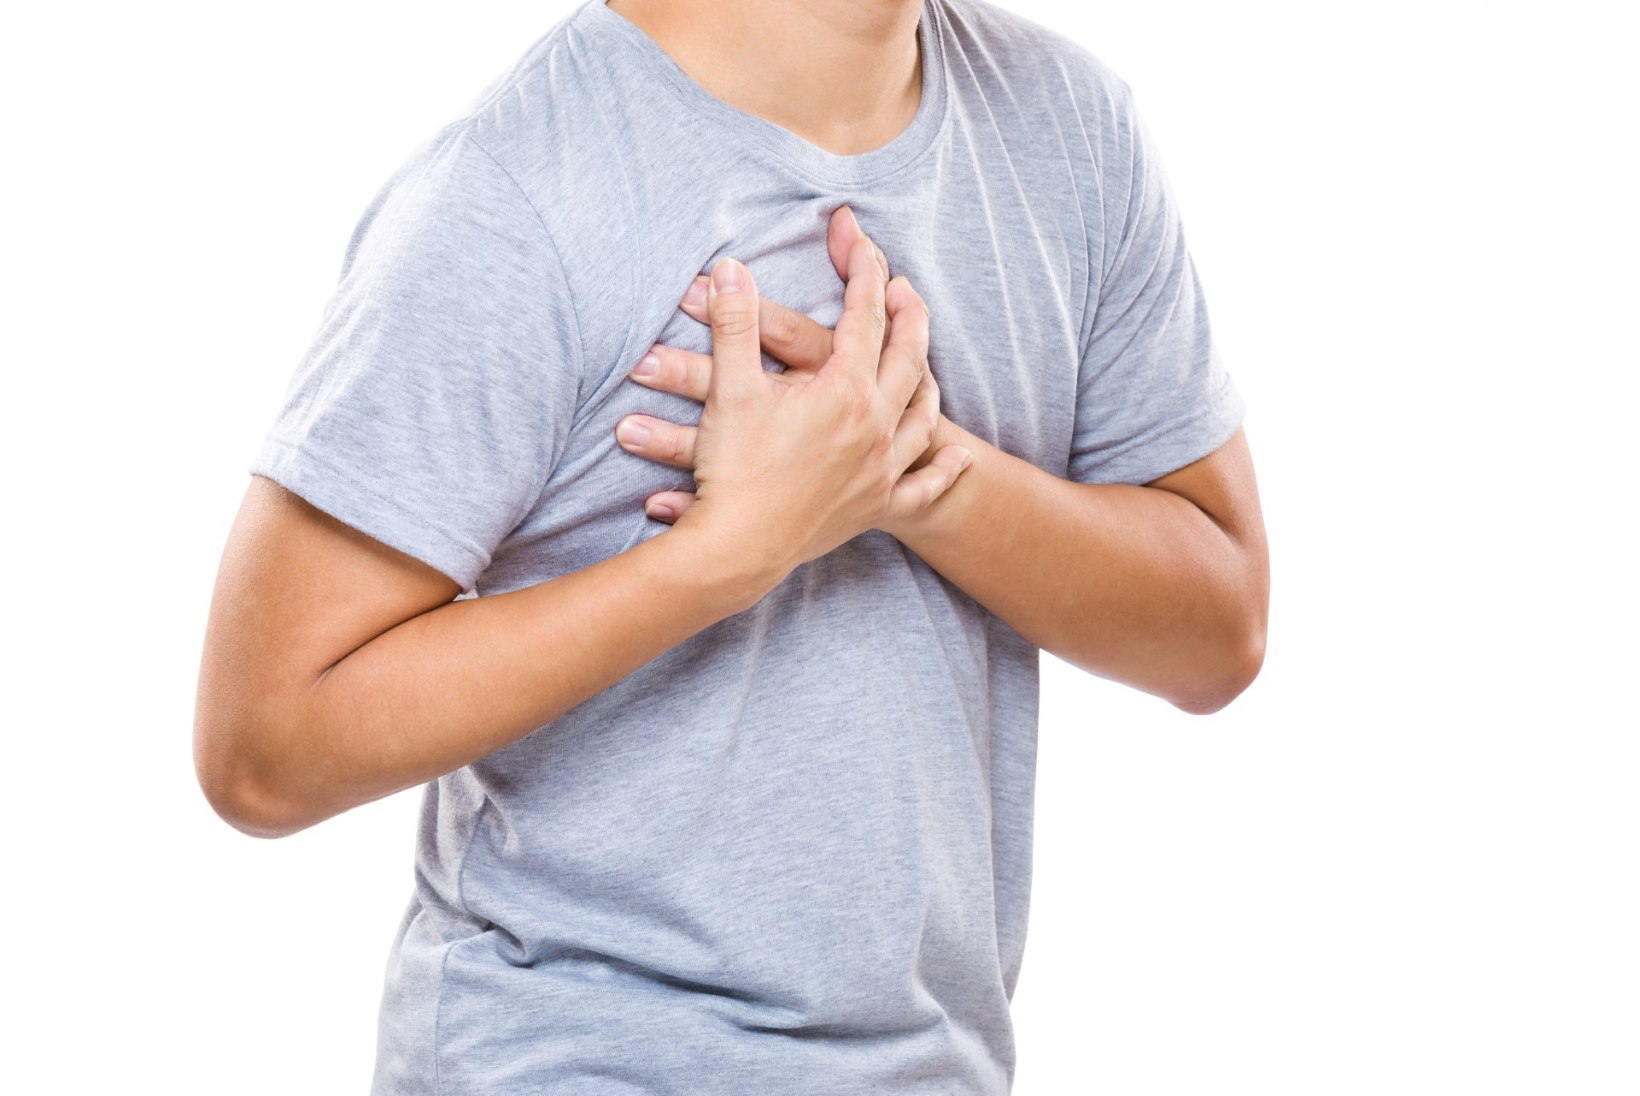 Tasub teada: sageli varjatult kulgev südamepuudulikkus ohustab rohkem elusid kui vähk